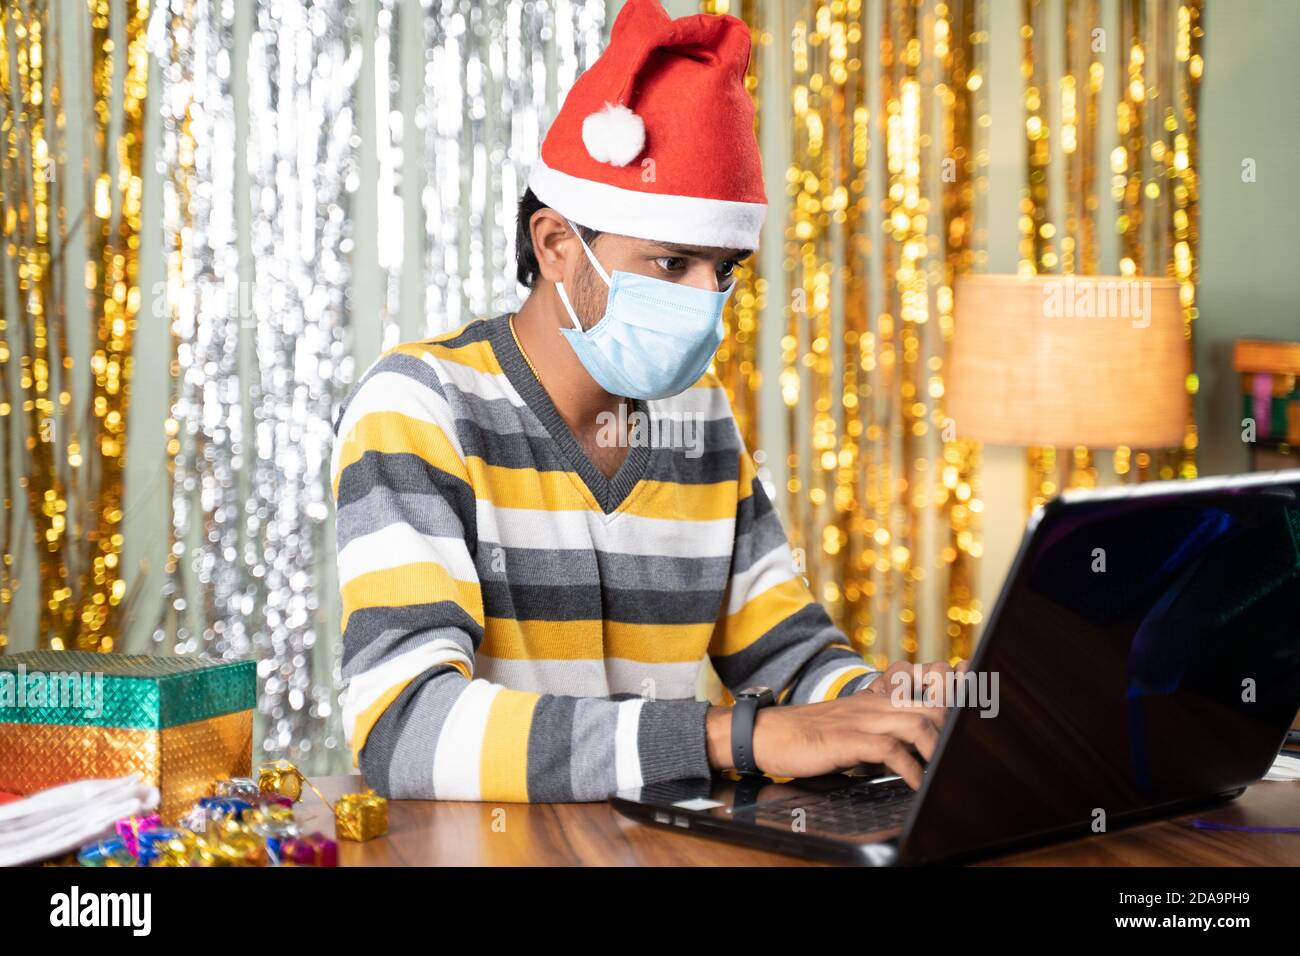 Jeune homme dans un masque médical occupé à travailler sur un ordinateur portable pendant Célébration de Noël ou du nouvel an avec fond décoré et cadeaux à l'avant - concept Banque D'Images